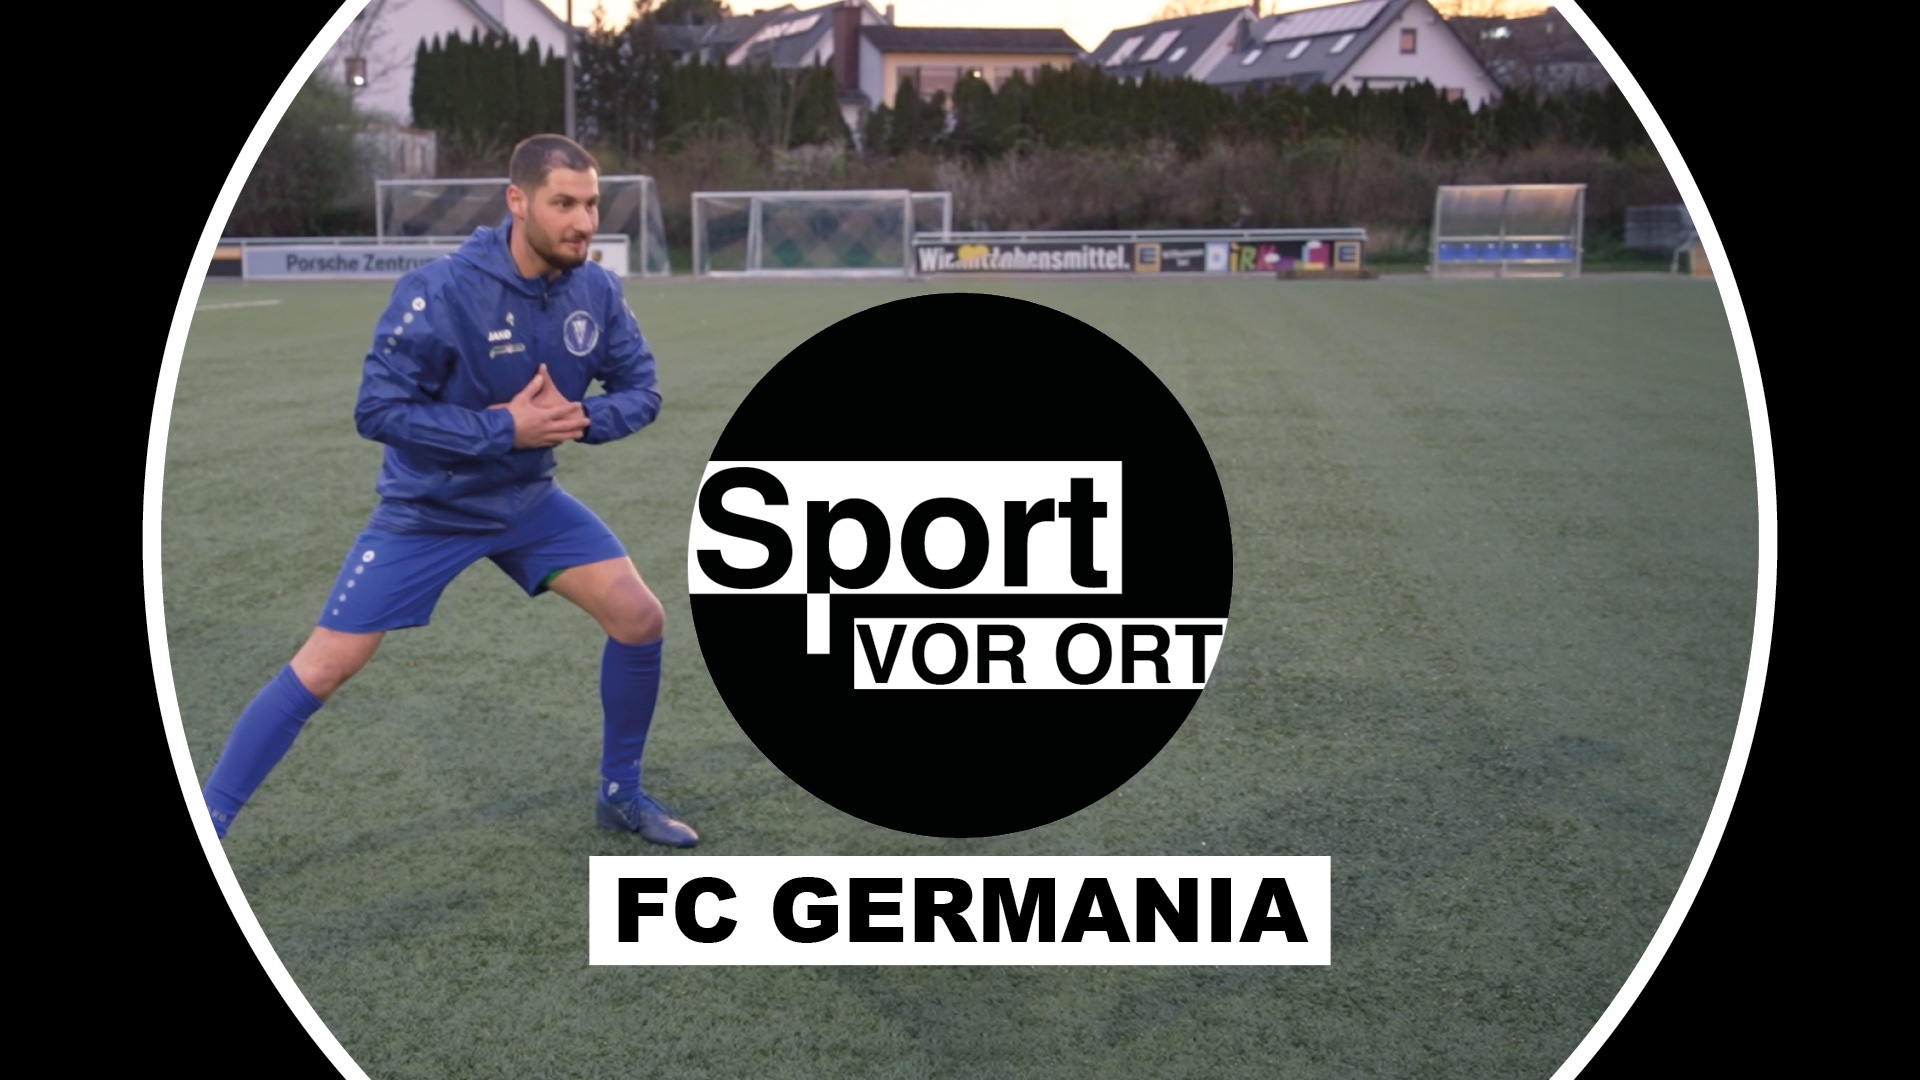 FC Germania Metternich - Fußball mit Leidenschaft